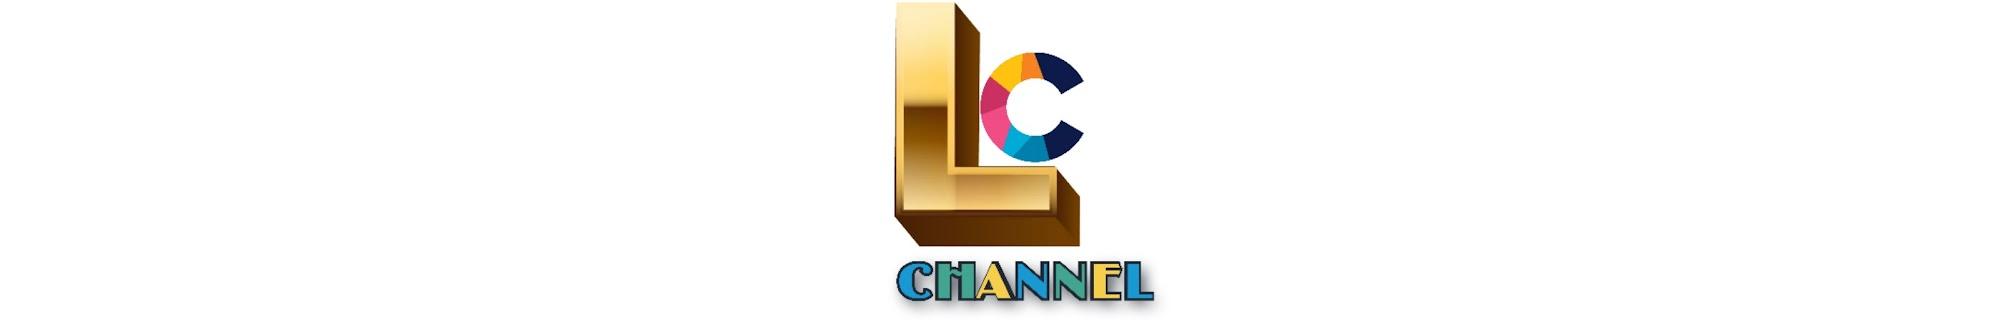 Lucu Channel